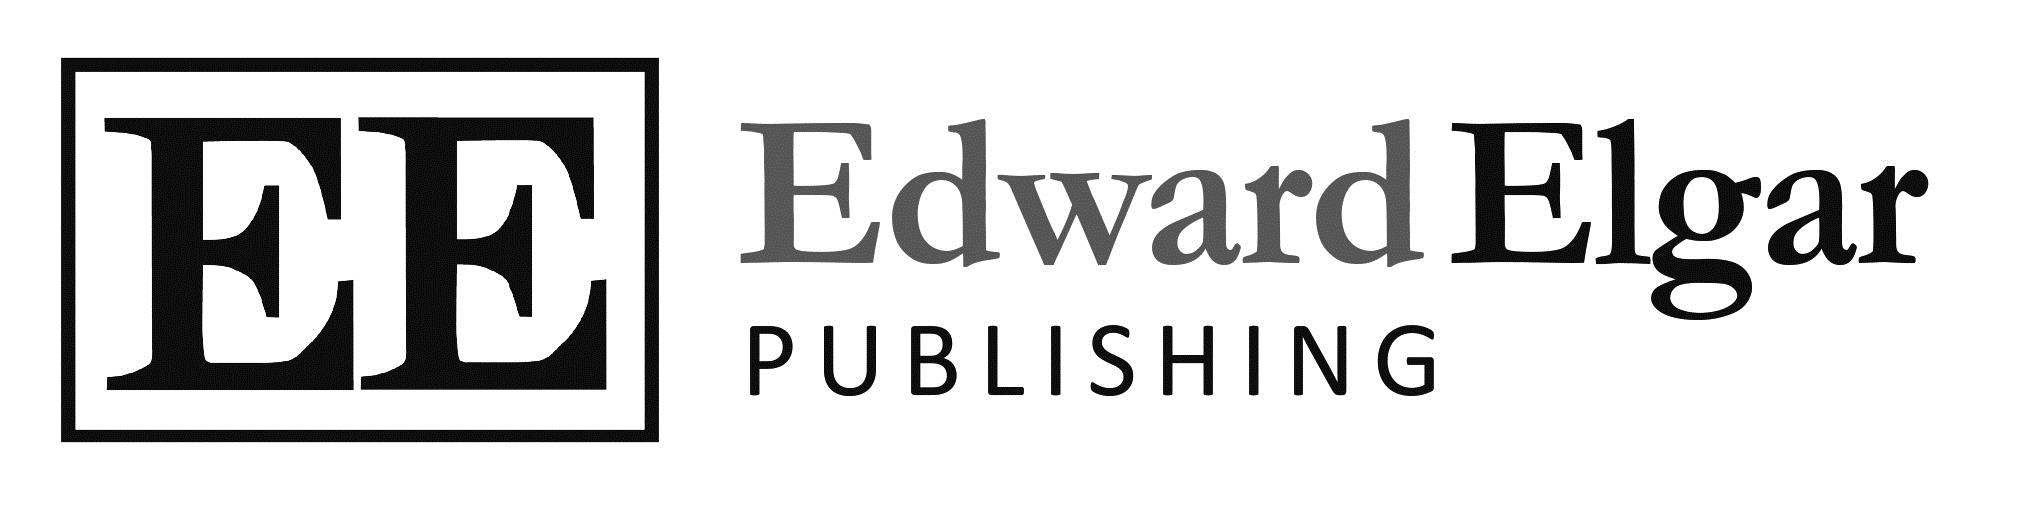 edward elgar